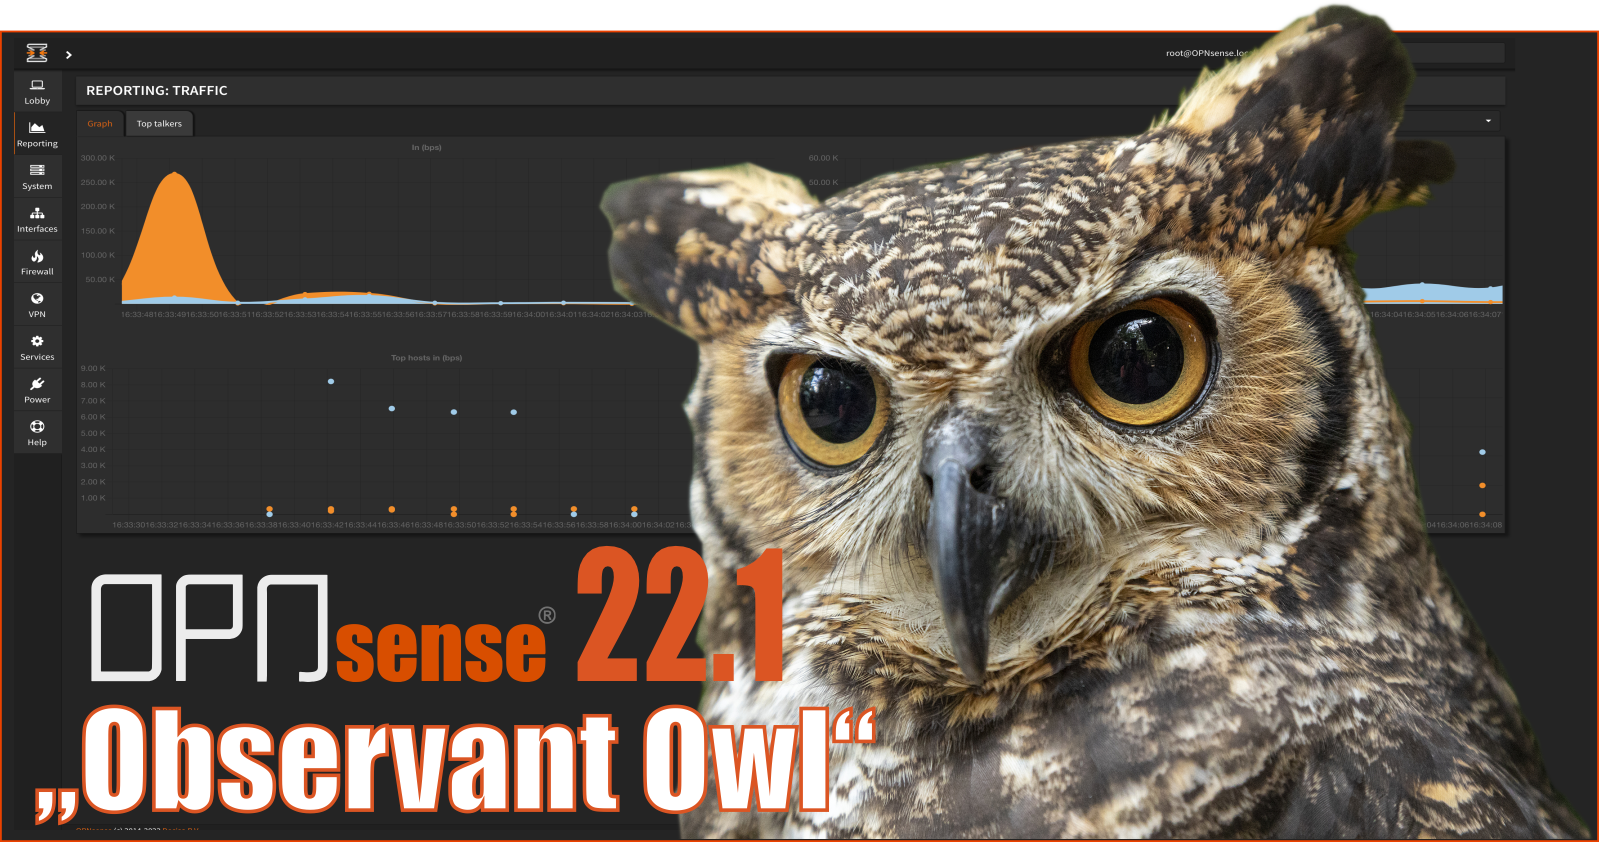 OPNsense® “Observant Owl” released